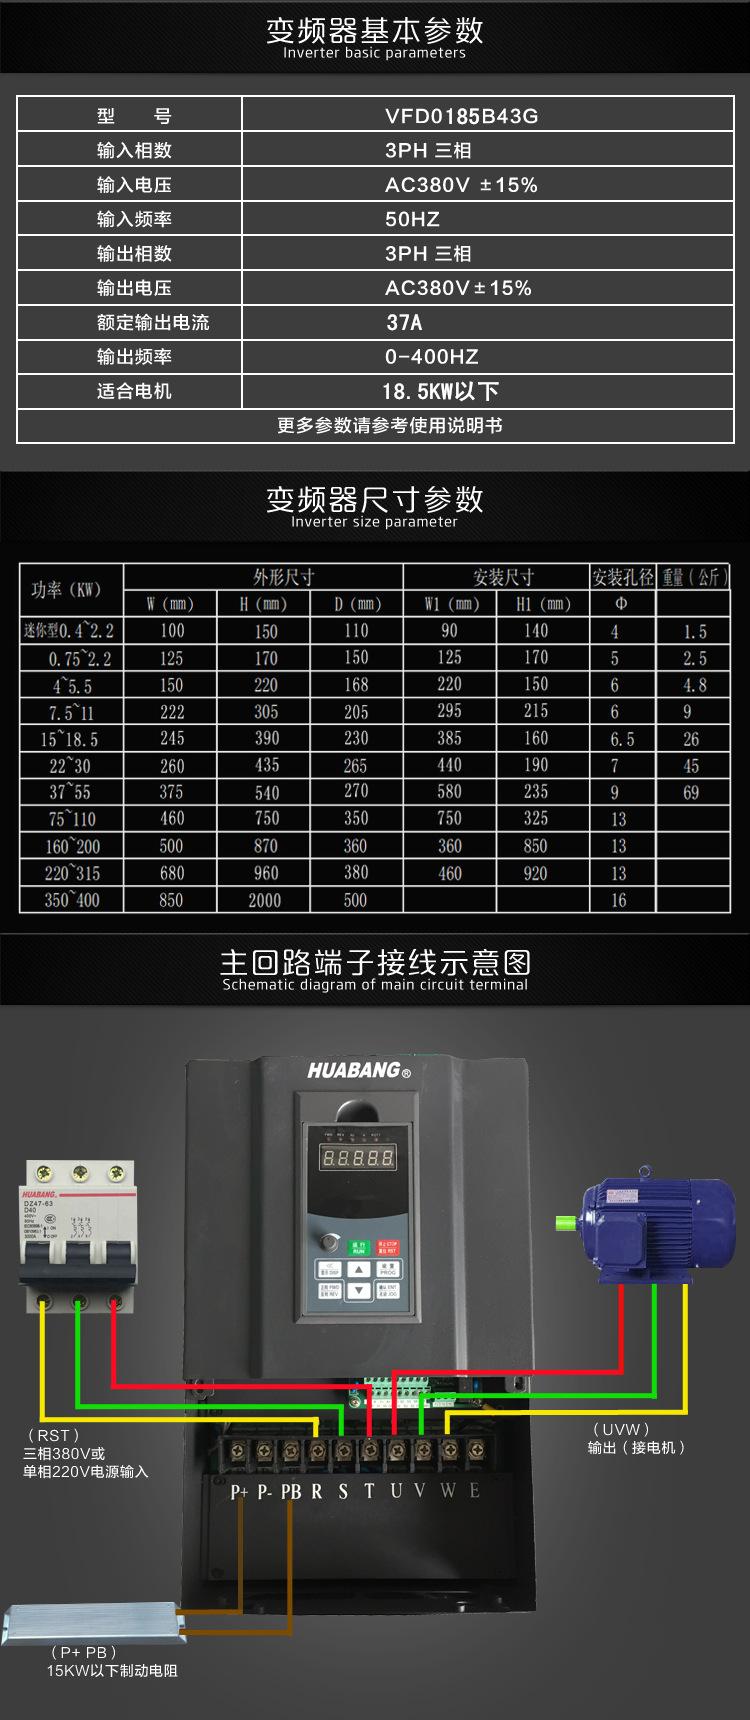 kwv600系列变频器上海耀邦_变频器_电工电气_工业品_产品